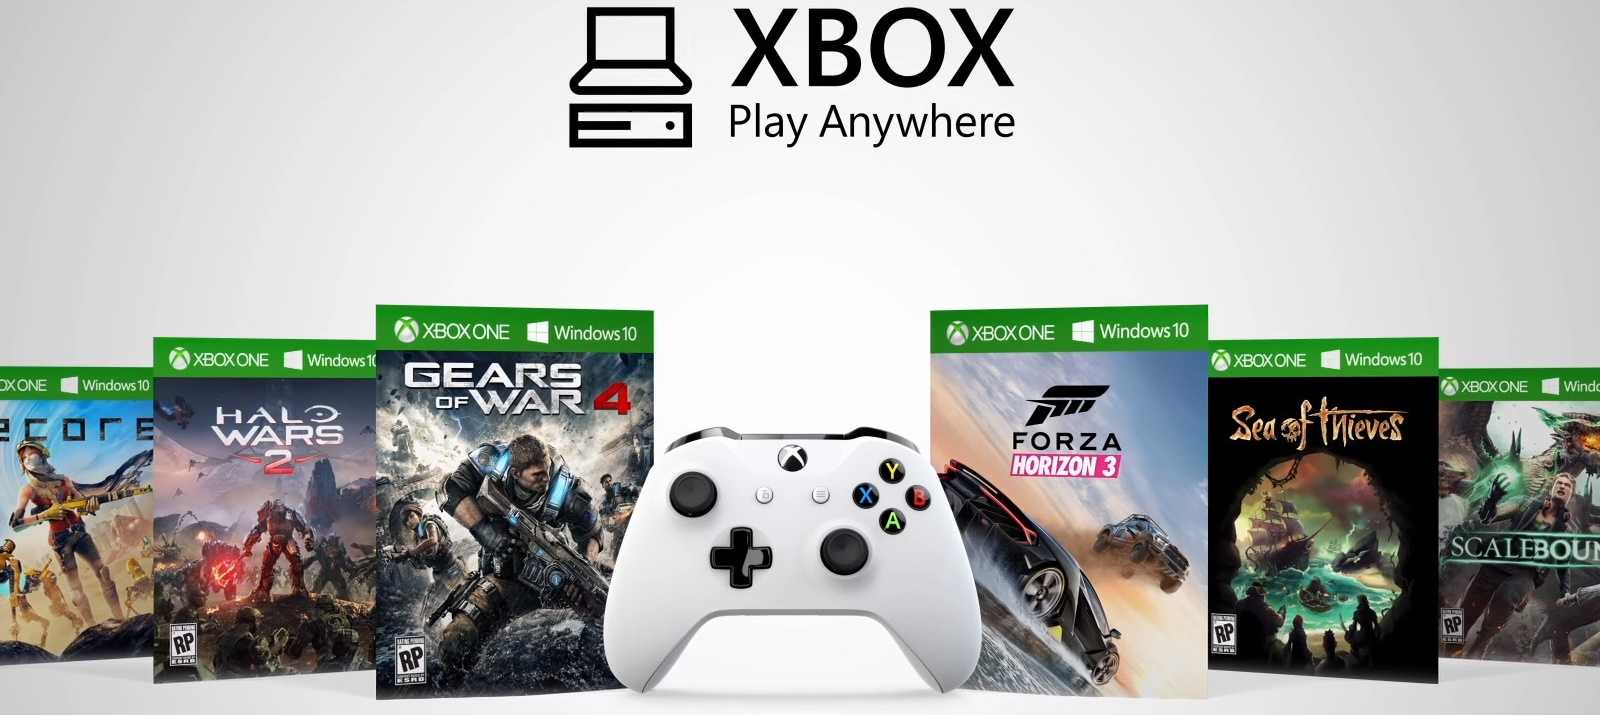 Первые слухи о возможном выпуске новой версии Xbox стали появляться еще в прошлом году Наконец-то представители компании Microsoft подтвердили теории и отметили что